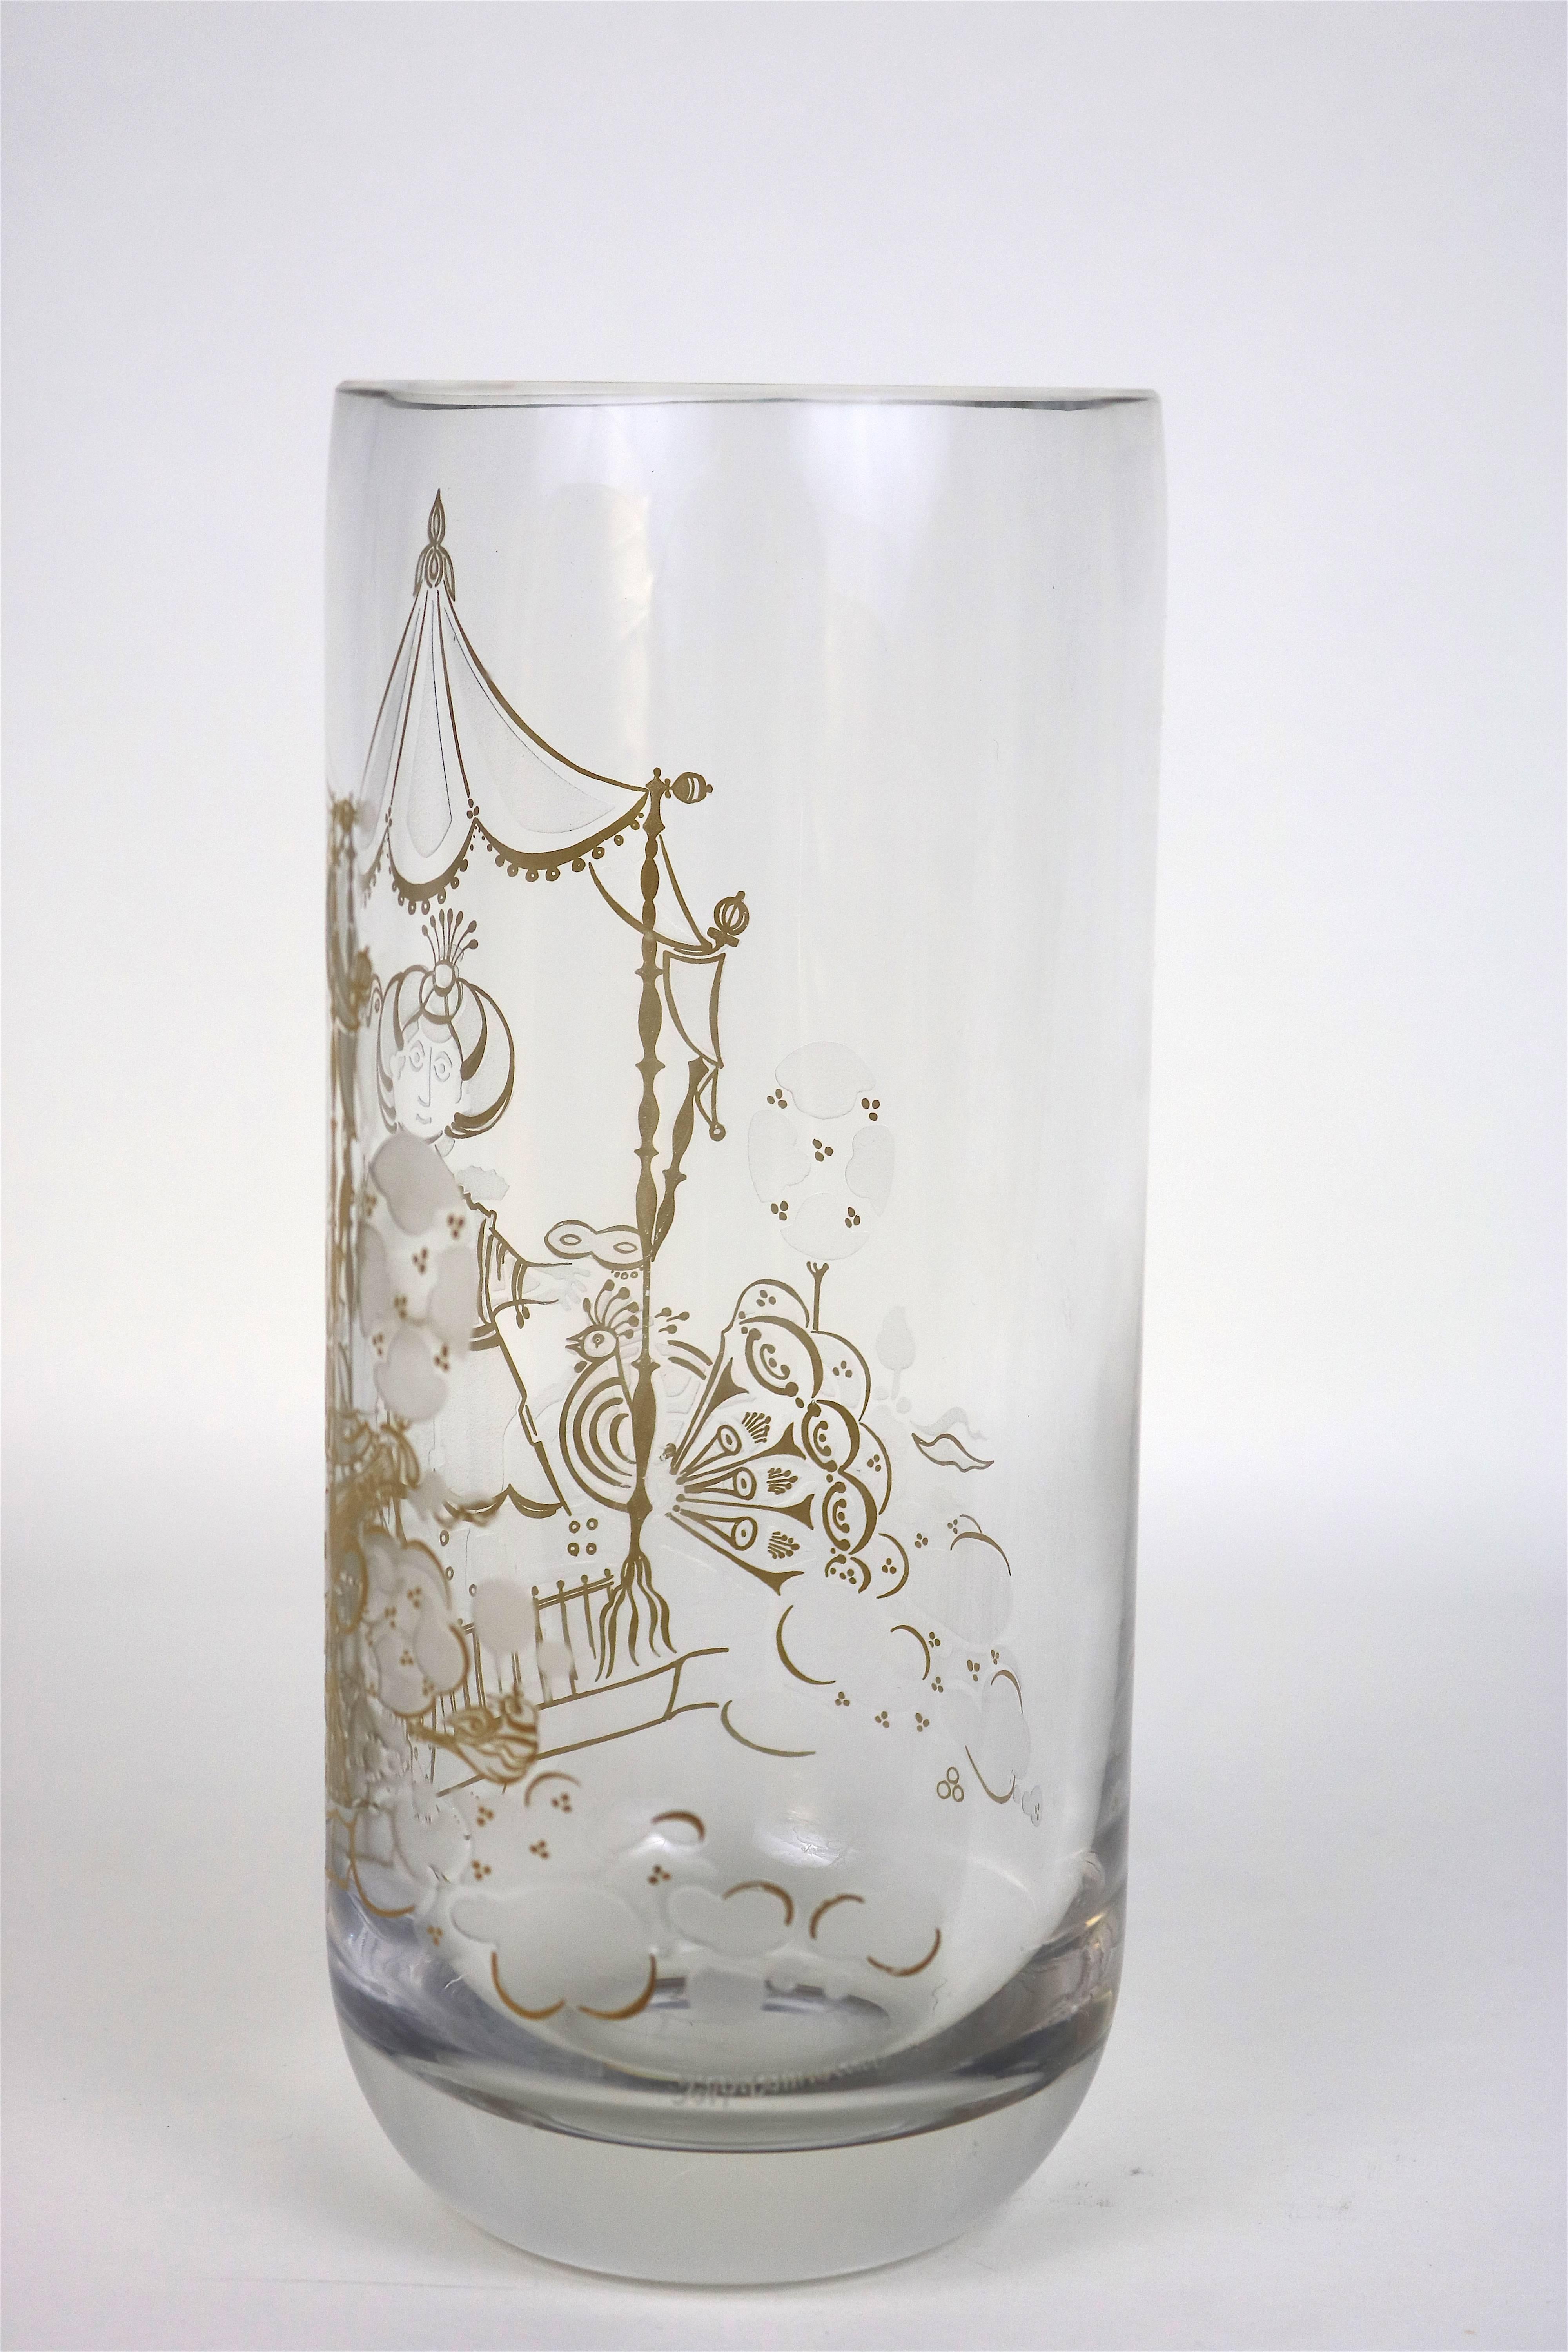 Bjorn Wiinblad Rosenthal Crystal Vase 22K Etched Gold Commedia Dell'Arte, Signed For Sale 1